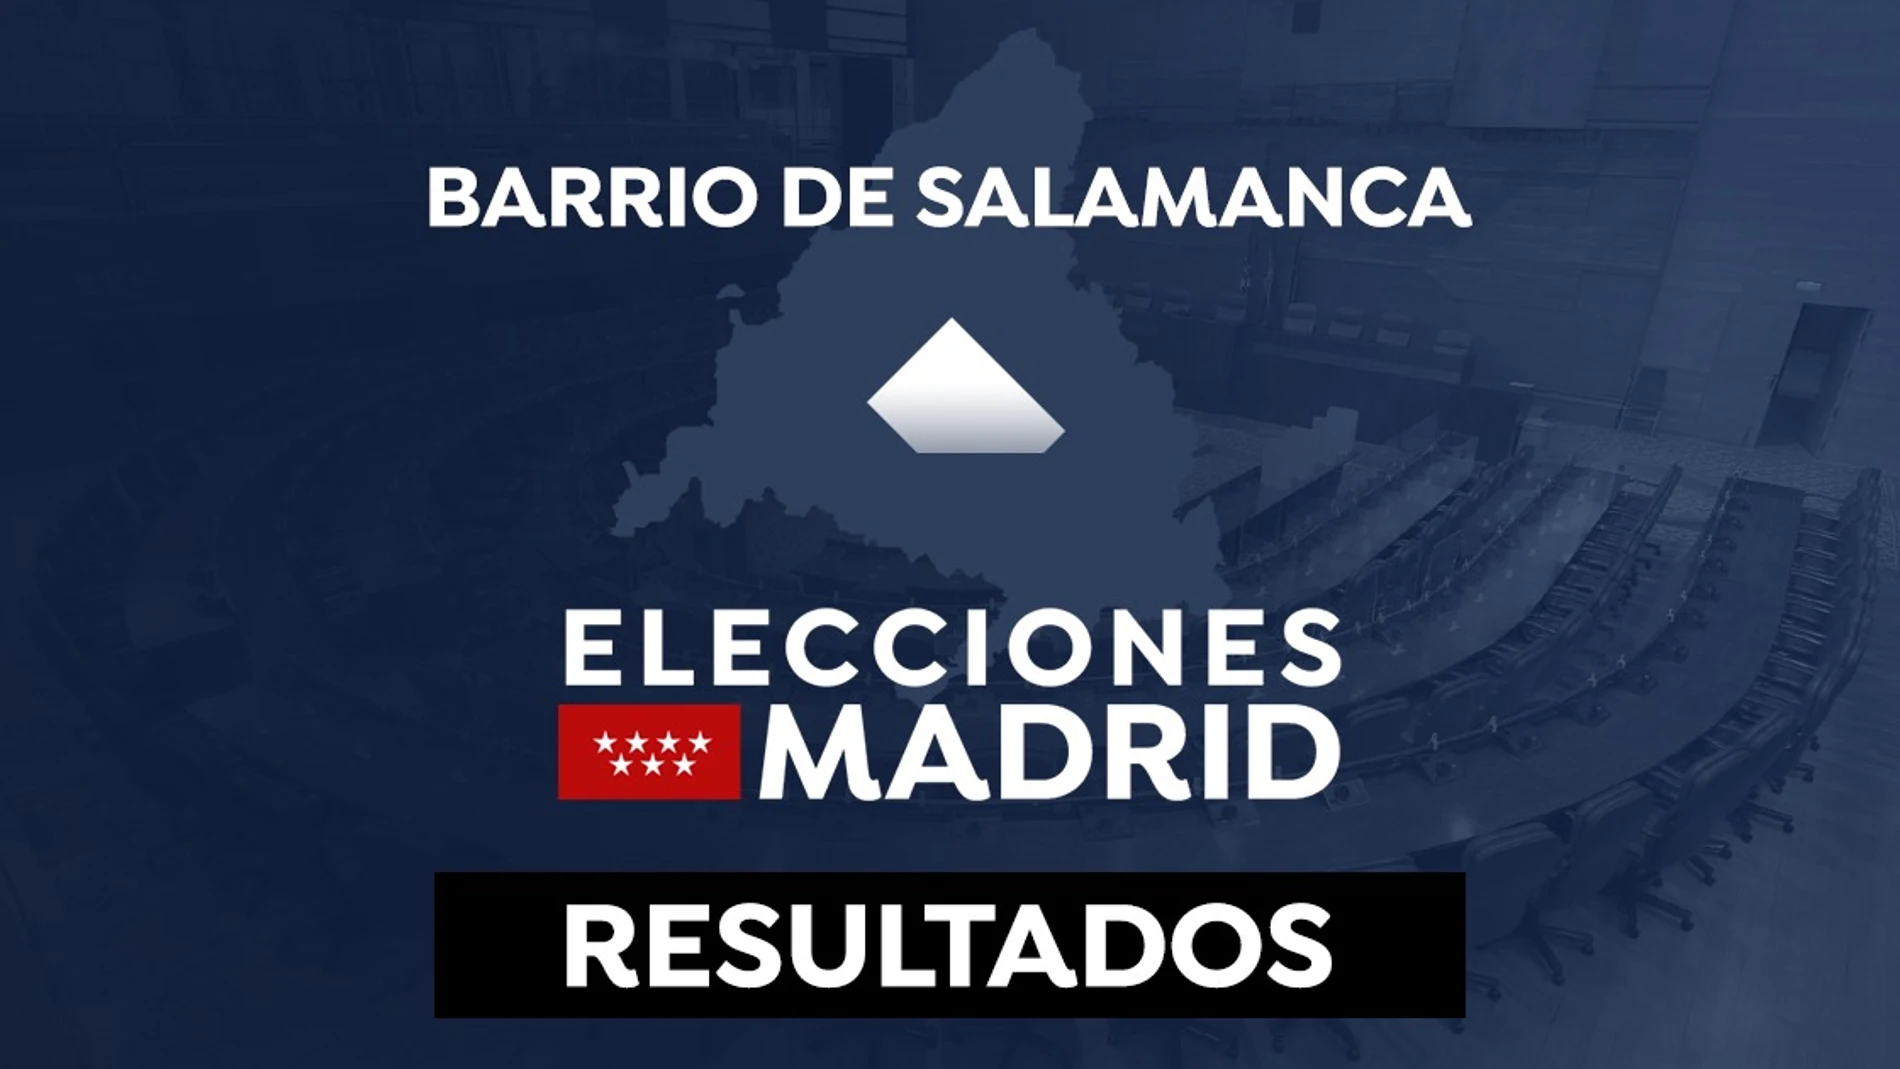 Resultado de las elecciones de Madrid en el barrio de Salamanca en 2021: Escrutinio en directo